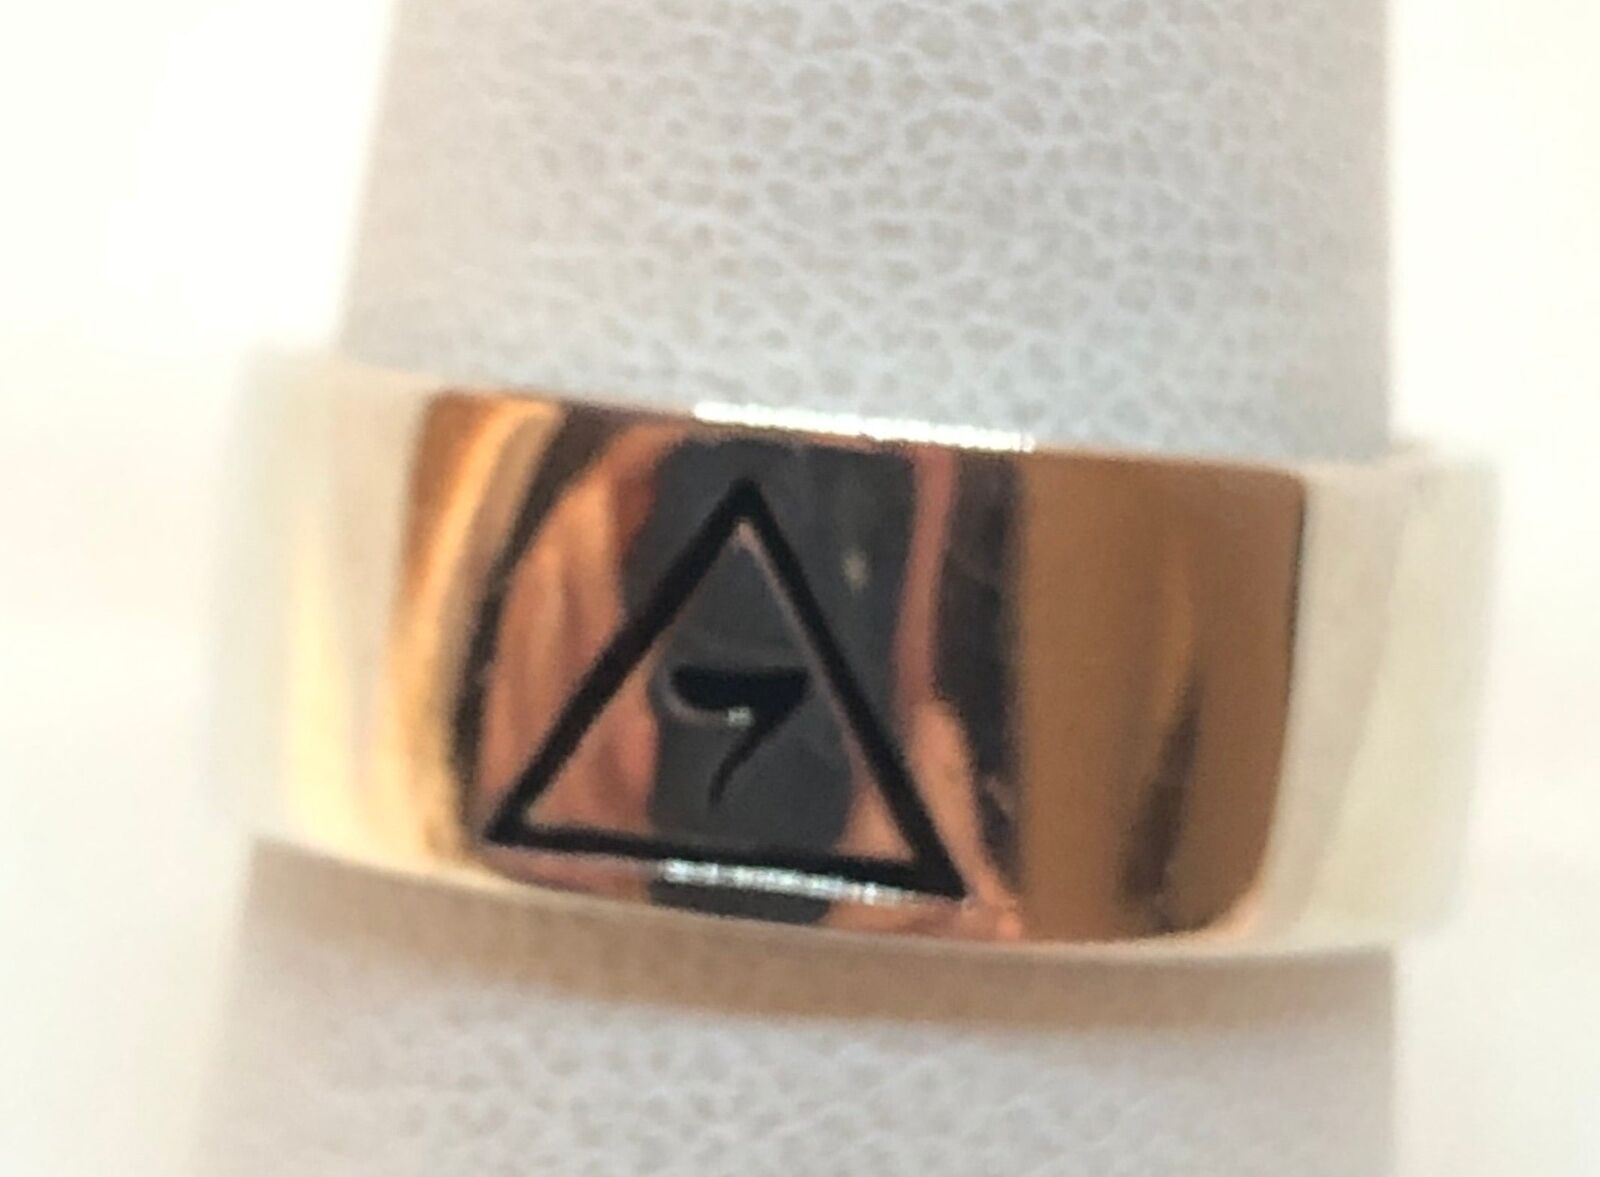 Masonic 925 Sterling Silver Mason Band Ring, 9mm wide size 7.25